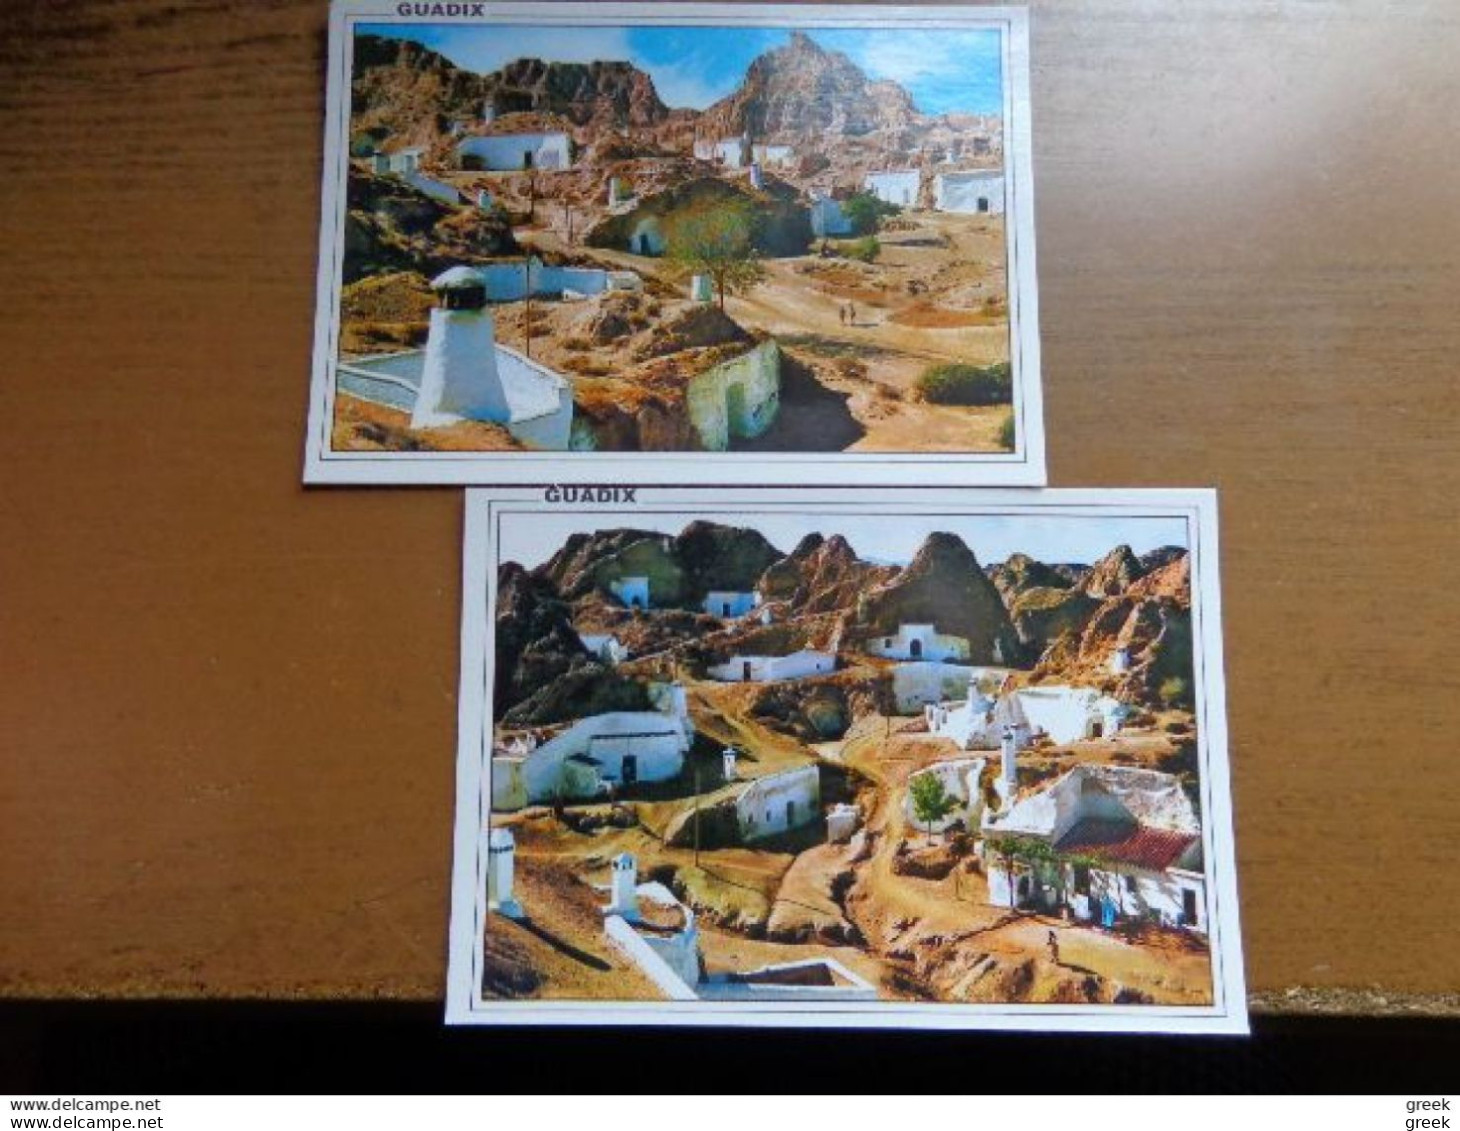 Doos postkaarten (4kg055) Allerlei landen en thema's, zie vele foto's (voir beaucoup des photo's)